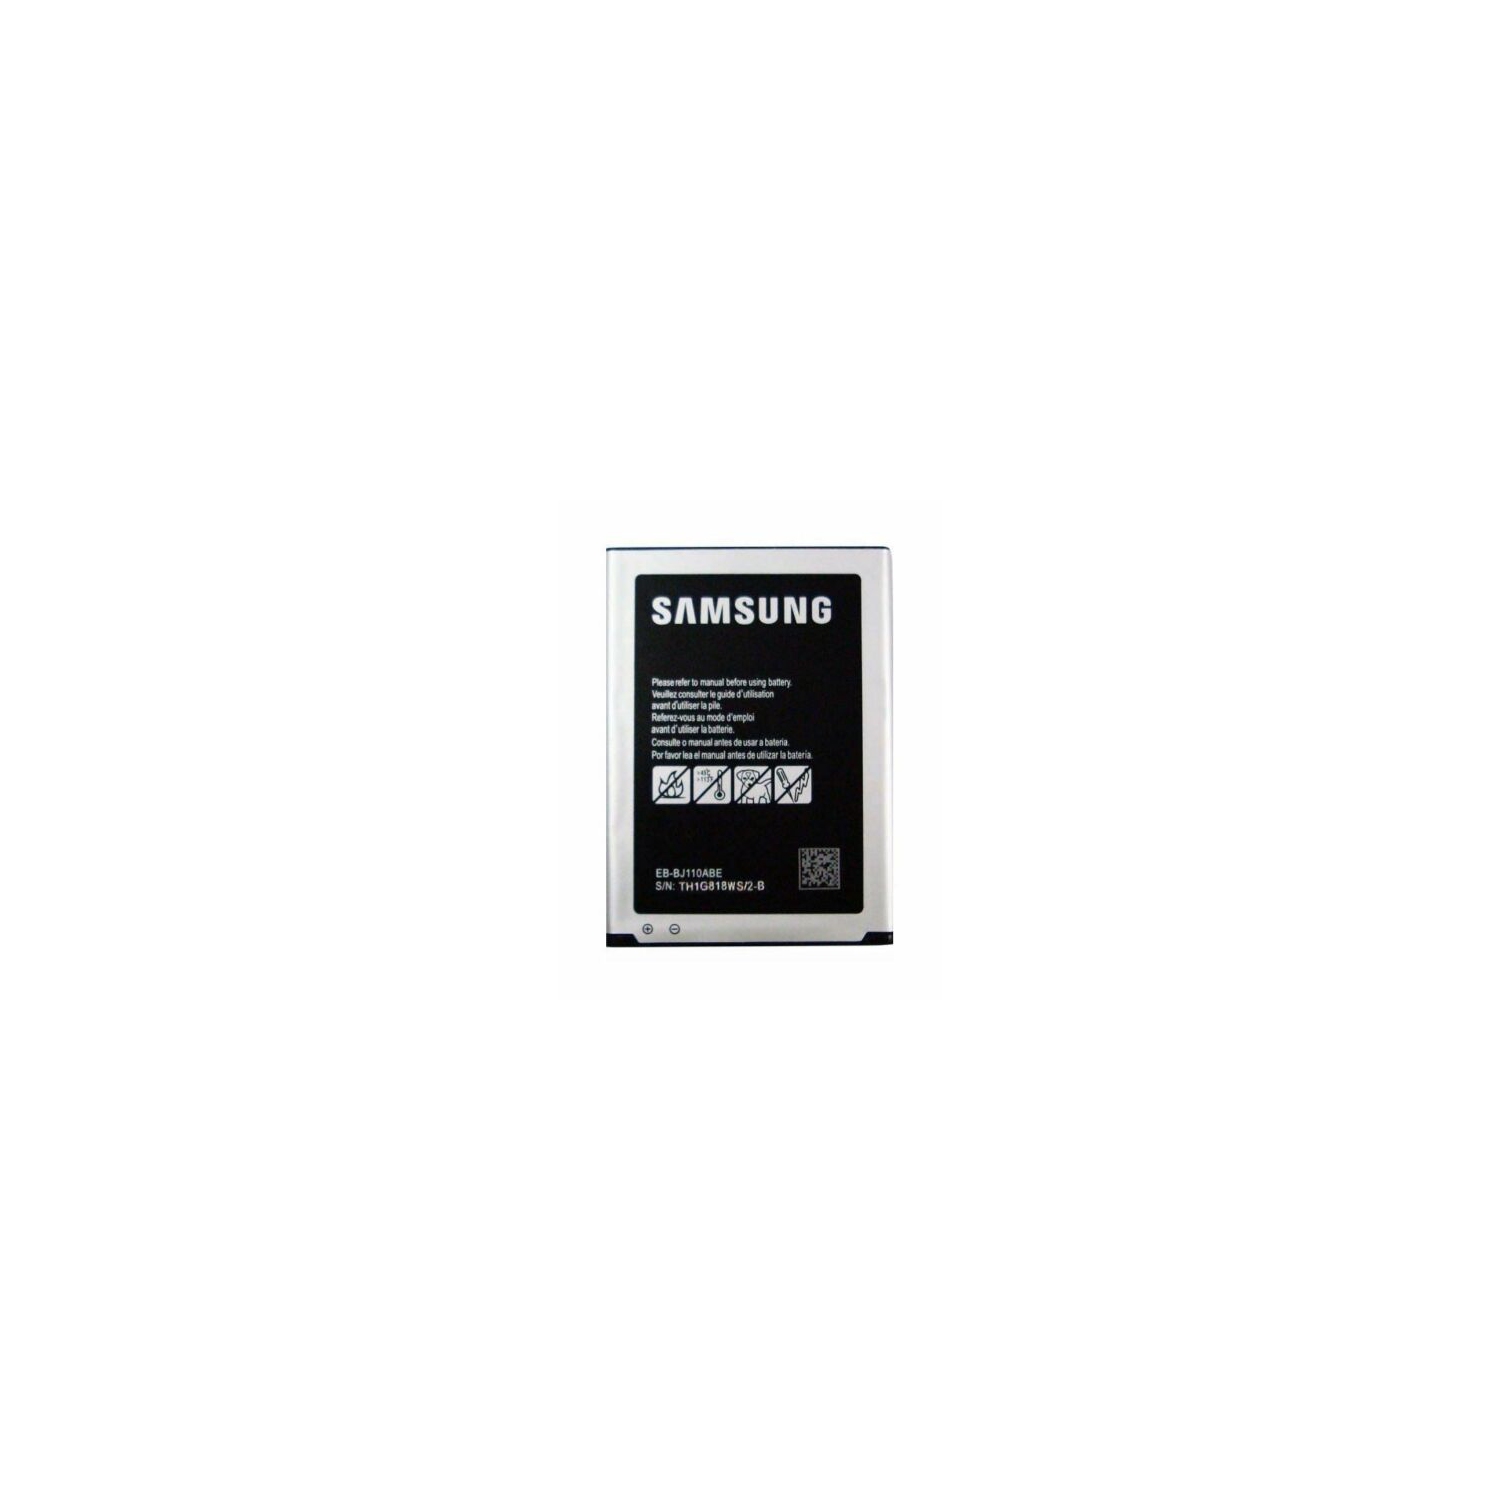 Samsung Galaxy J1 Ace Duos Neo Replacement Battery, J110 J110F J111 EB-BJ110ABE EB-BJ110ABA EB-BJ110ABU